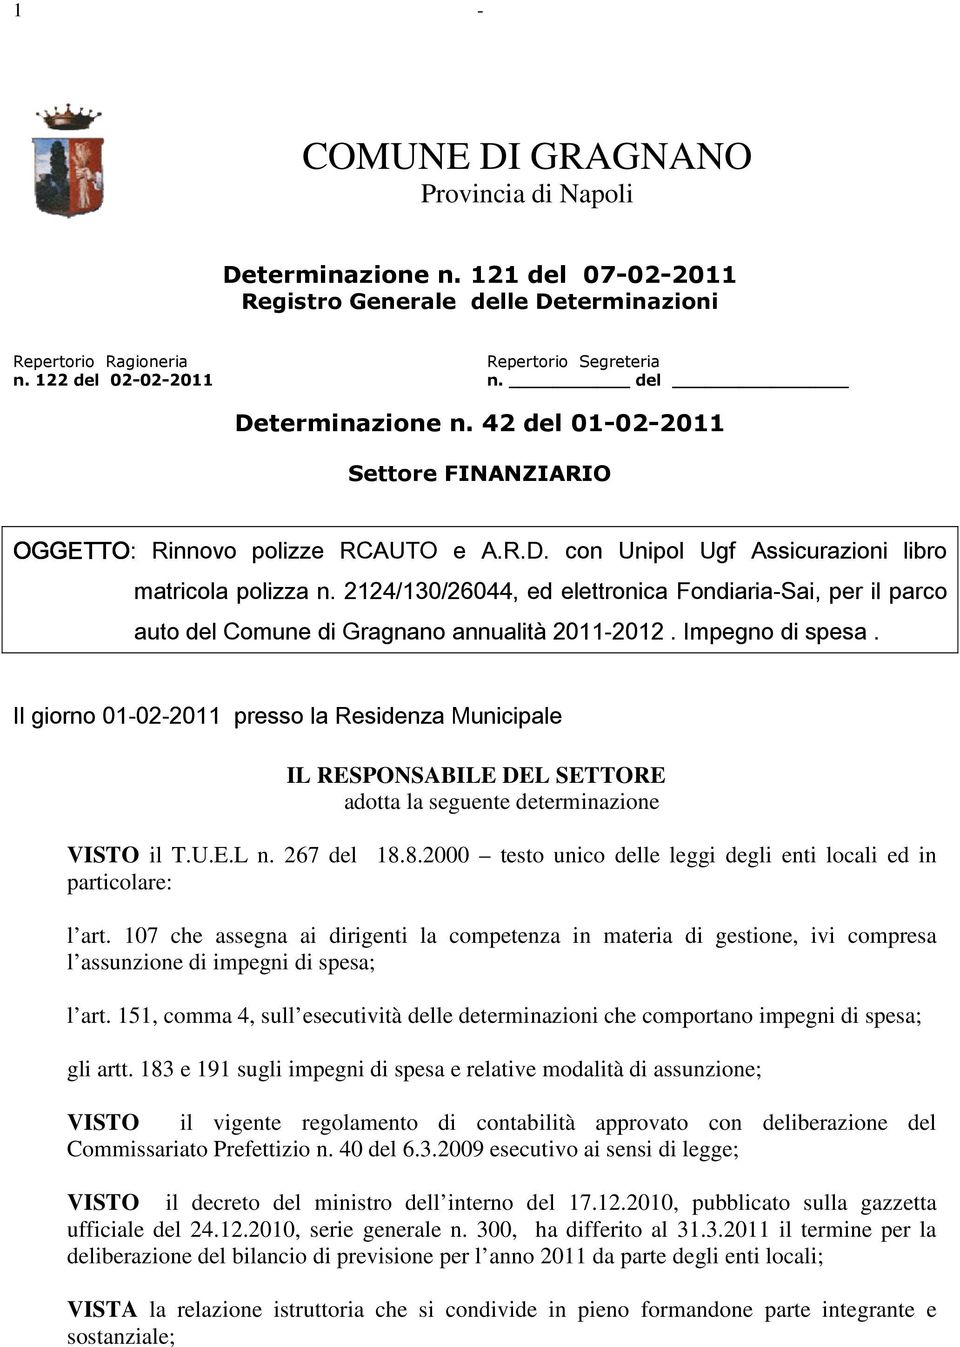 2124/130/26044, ed elettronica Fondiaria-Sai, per il parco auto del Comune di Gragnano annualità 2011-2012. Impegno di spesa.